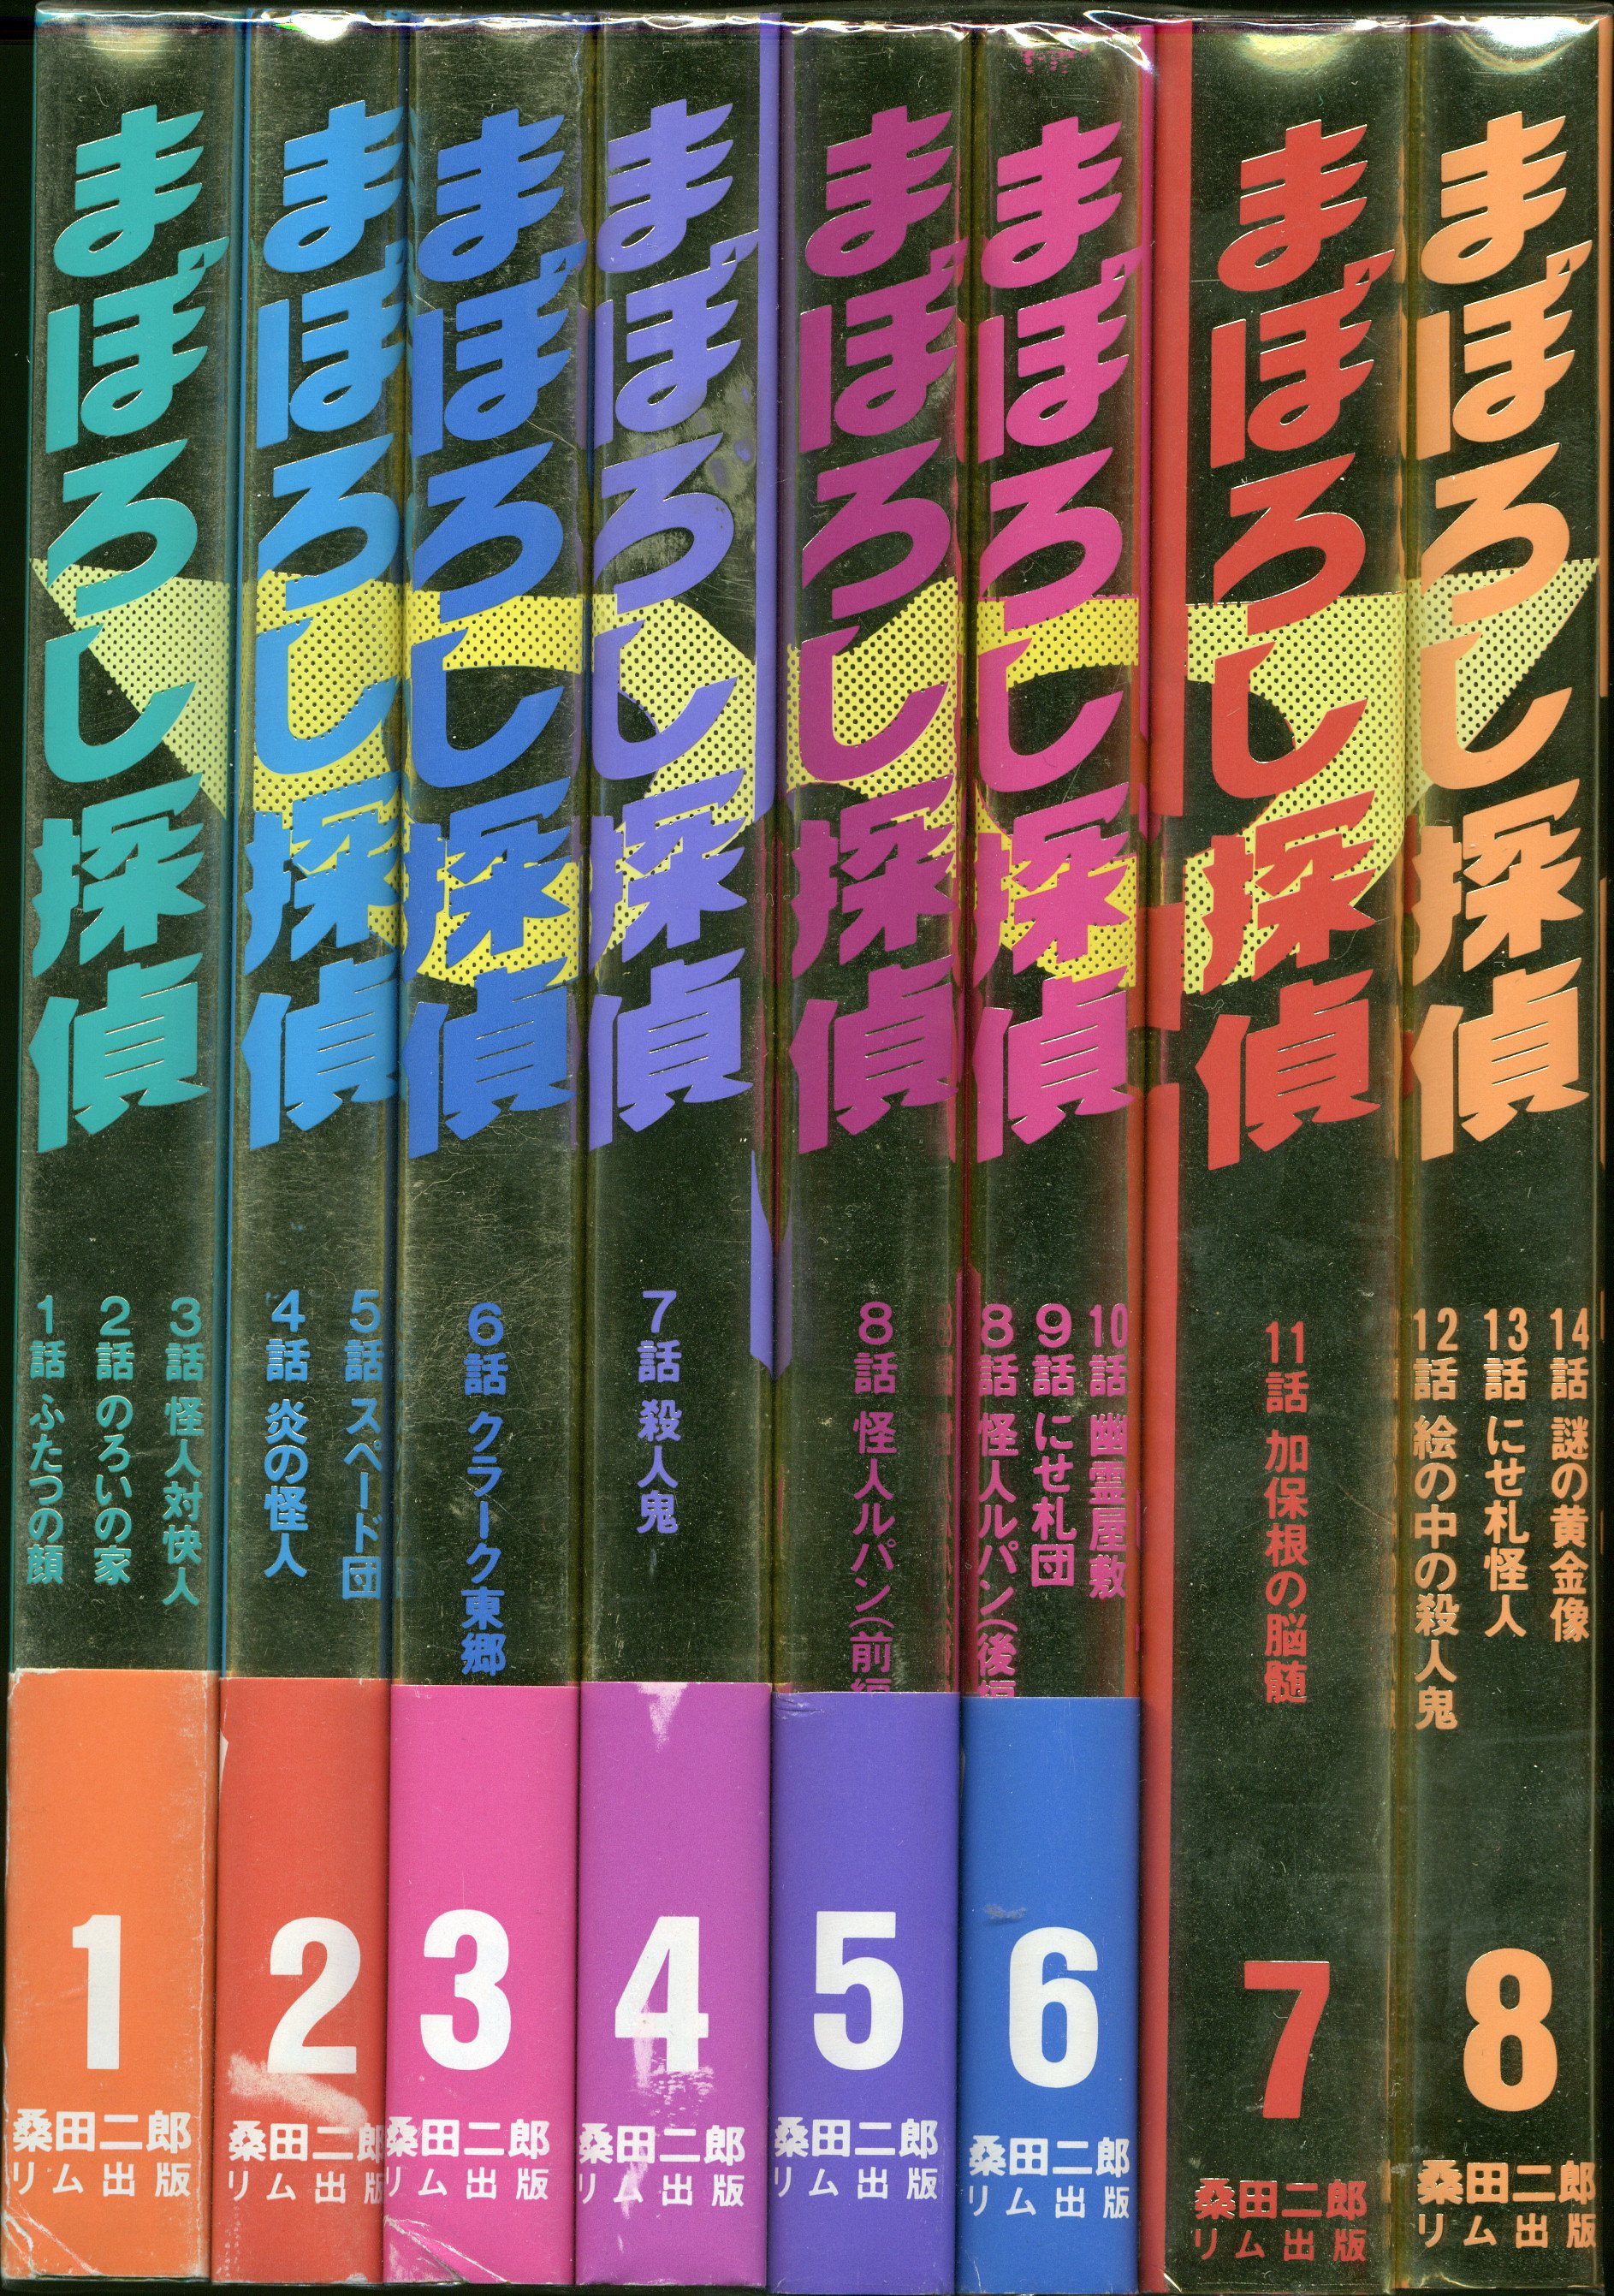 リム出版新社 桑田次郎 ☆まぼろし探偵 完全復刻版 全8巻 セット